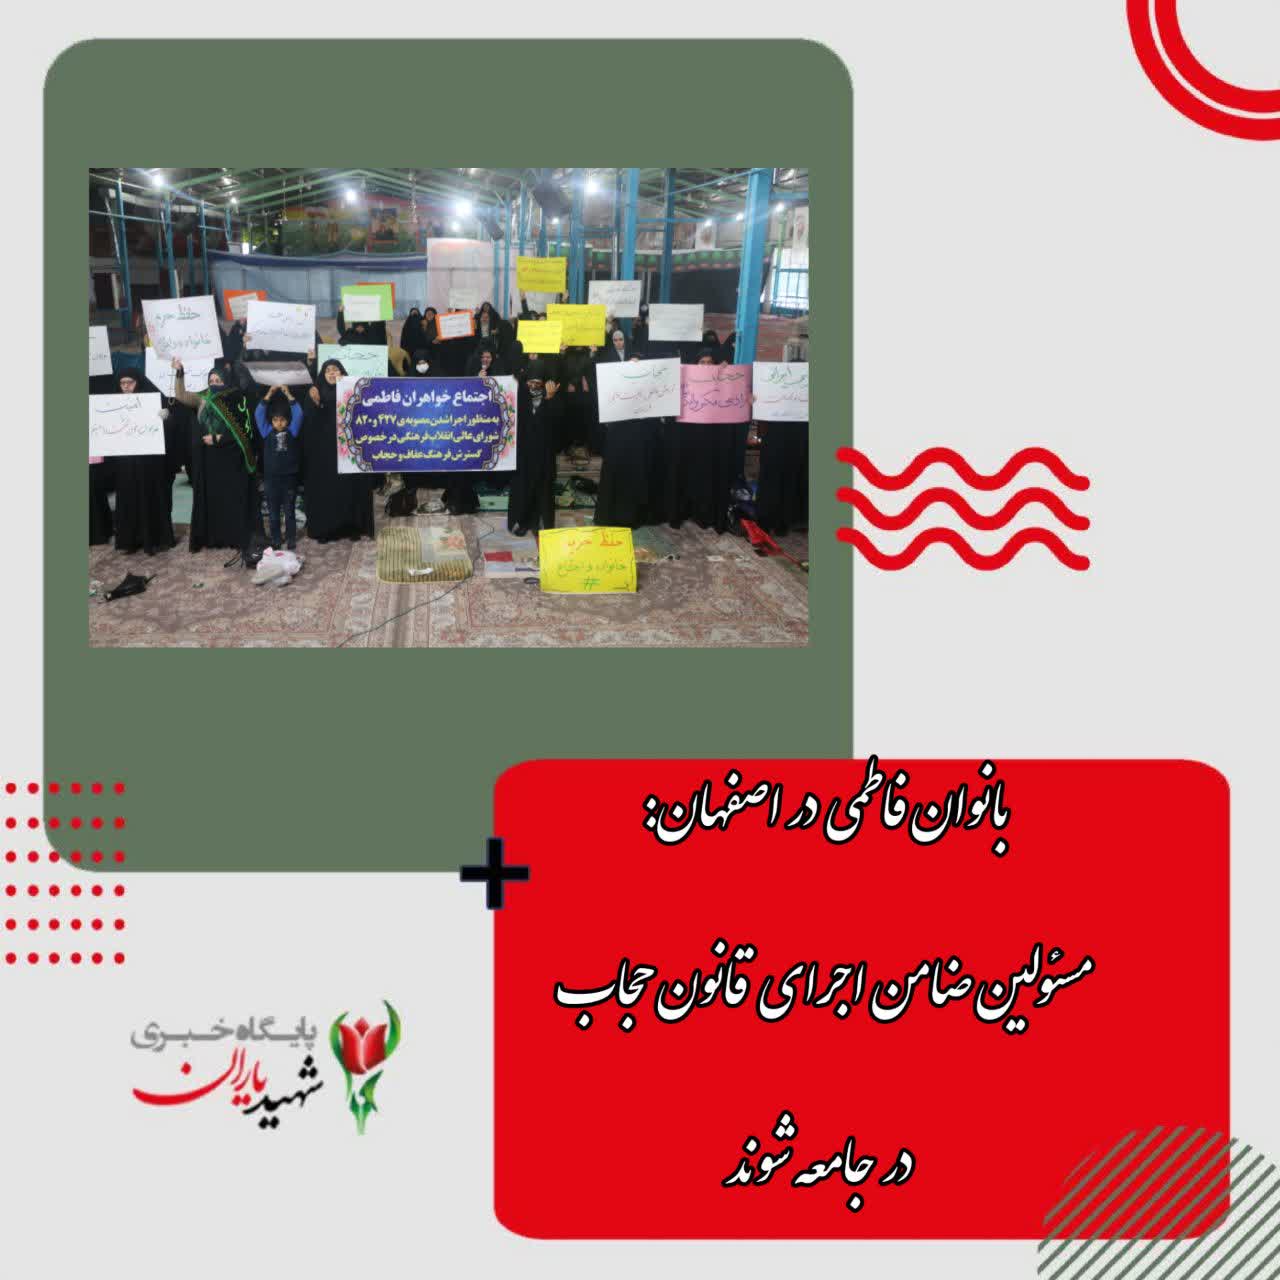 بانوان فاطمی در اصفهان:مسئولین ضامن اجرای قانون حجاب در جامعه شوند